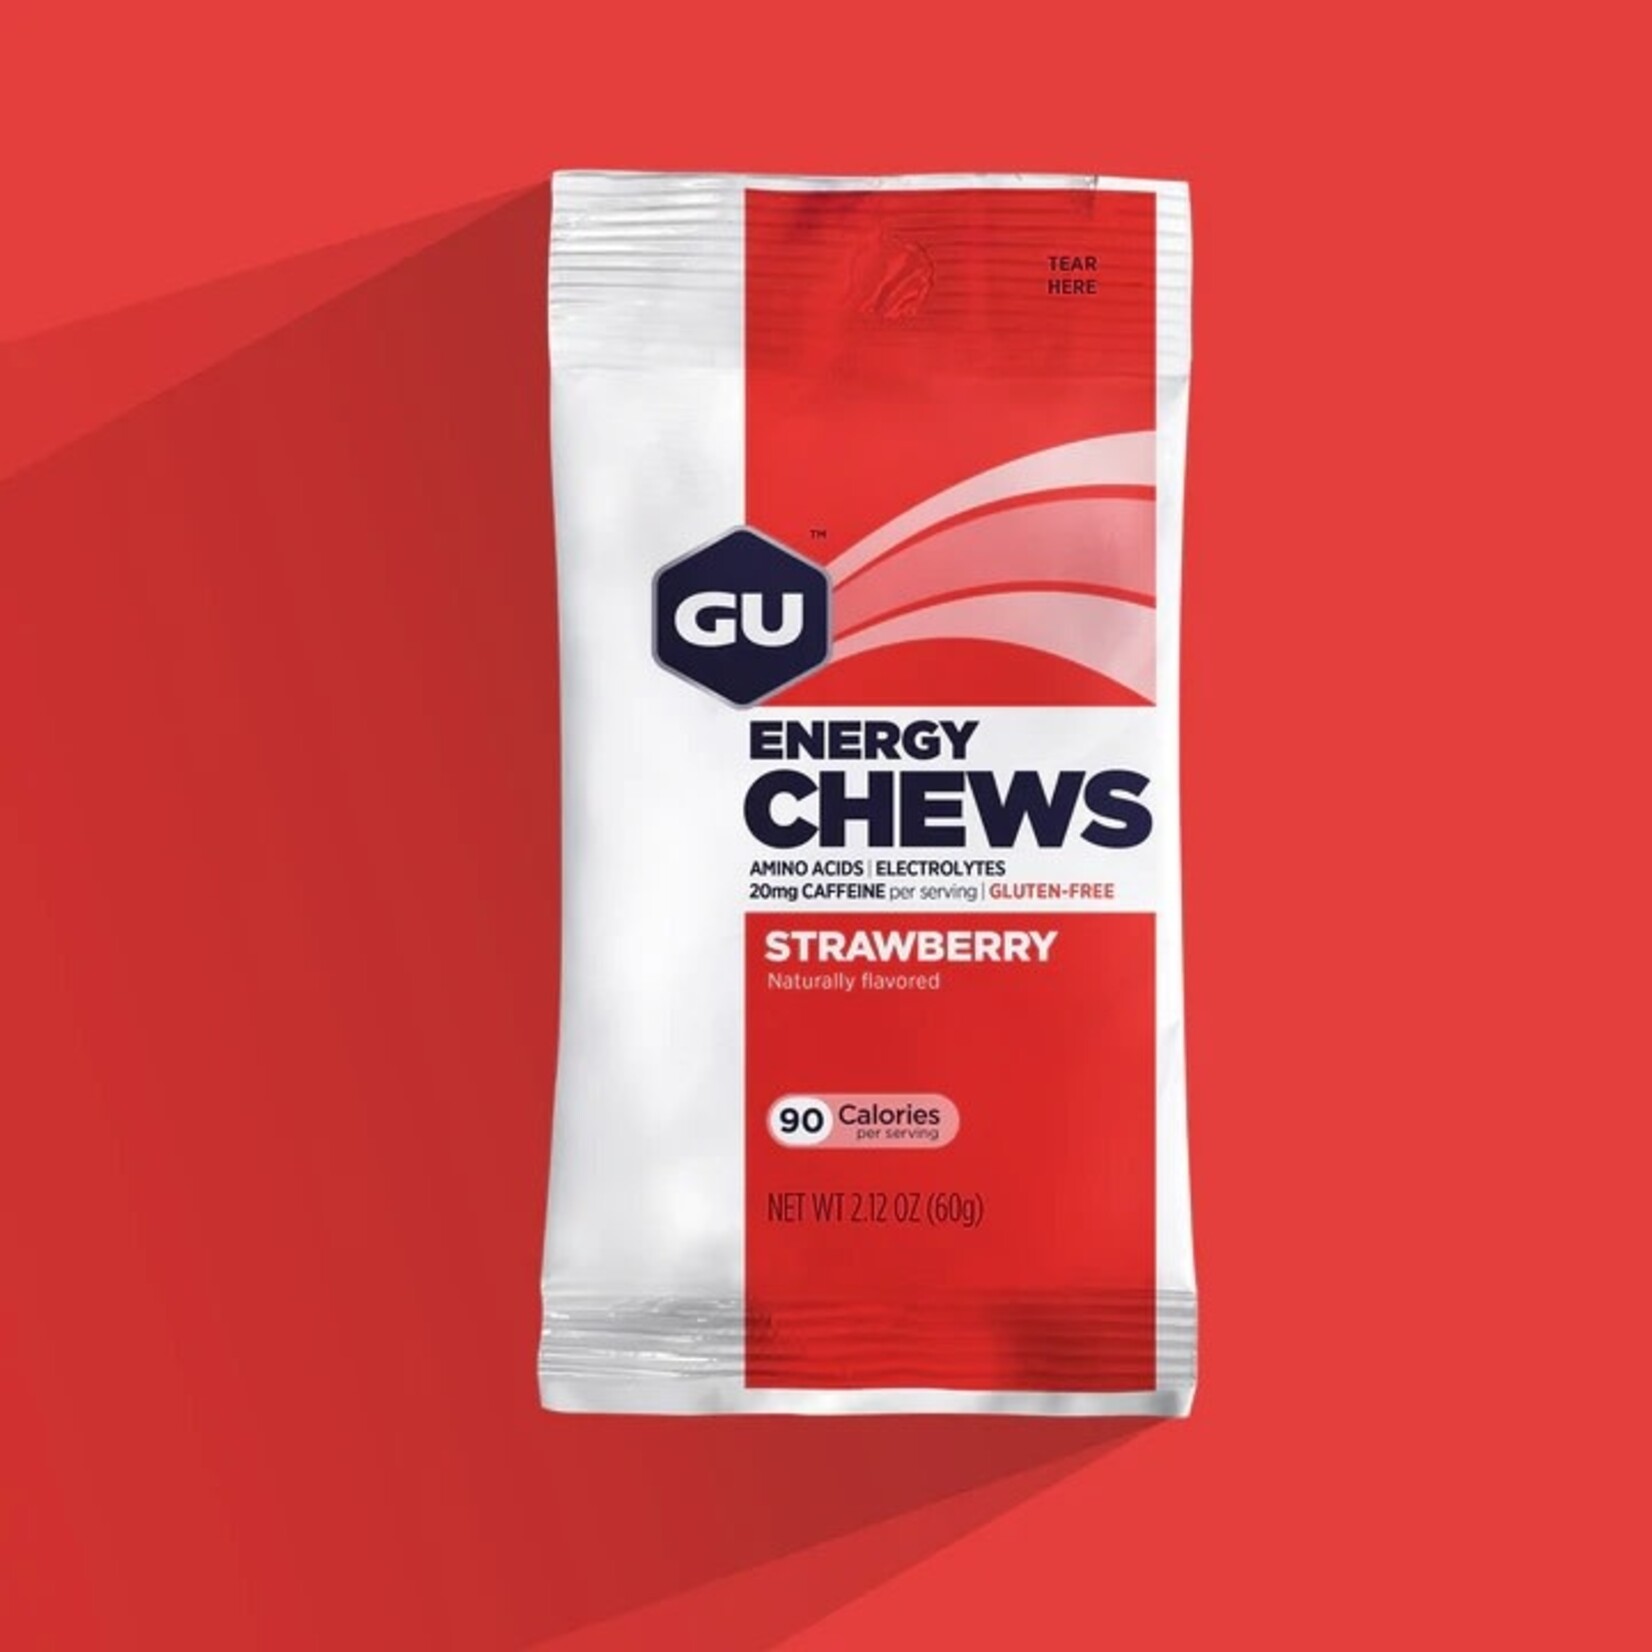 GU Energy Labs GU, Chews 2 Serving Pack